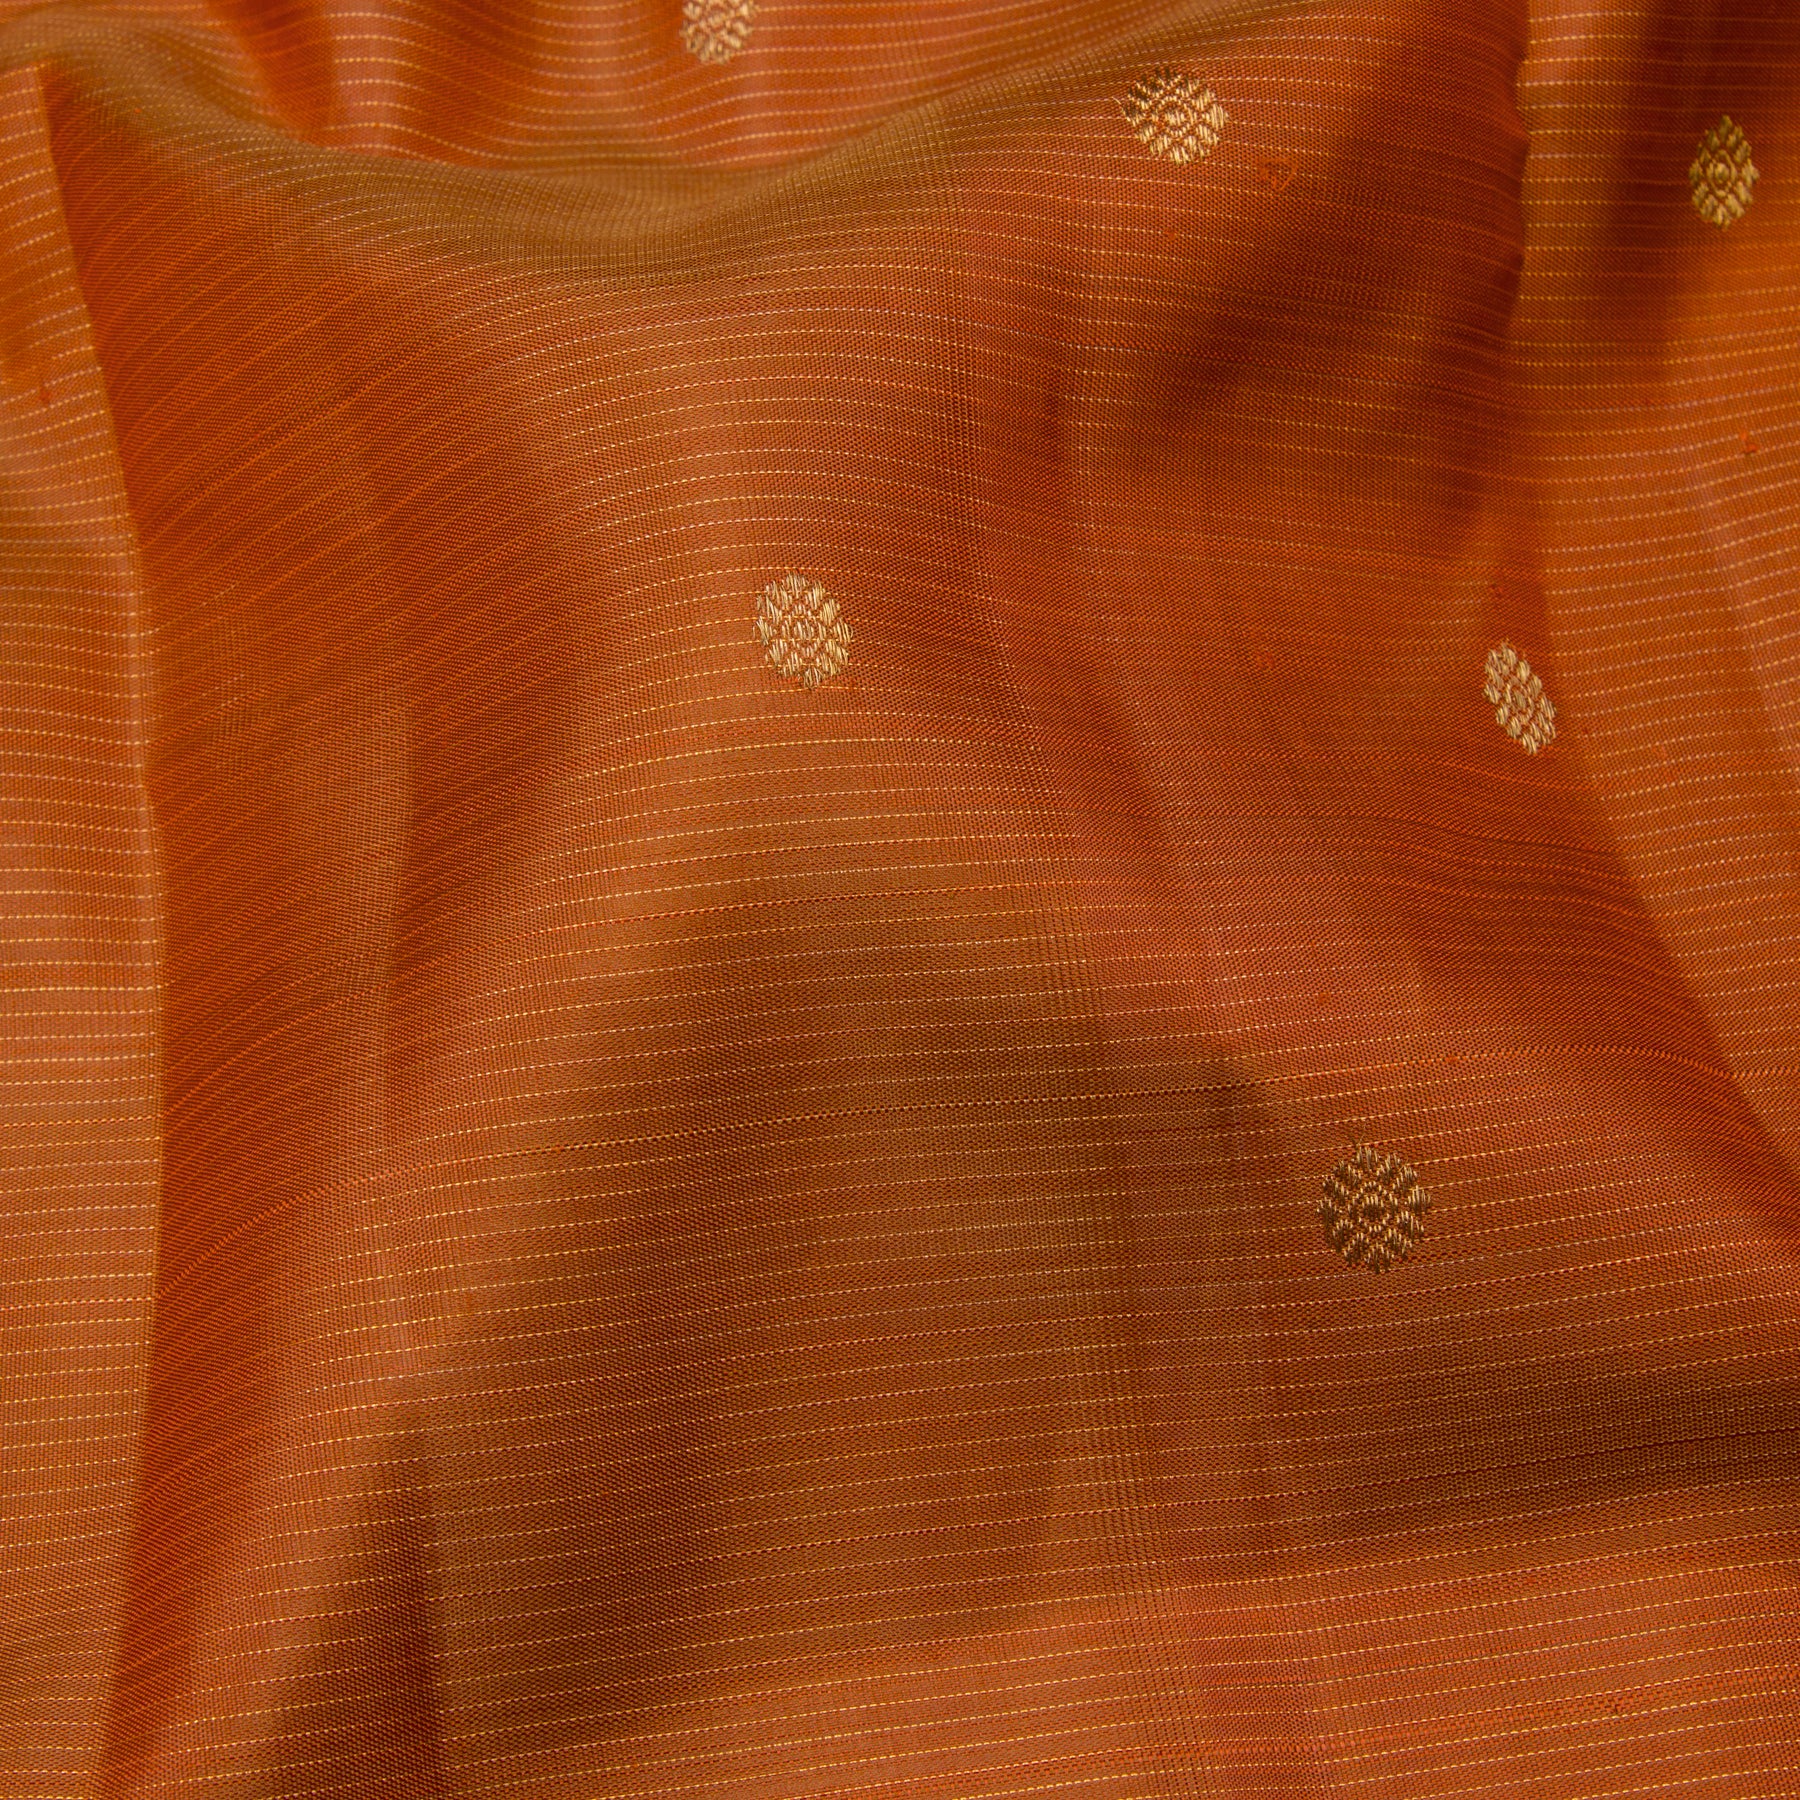 Kanakavalli Kanjivaram Silk Sari 24-599-HS001-00292 - Fabric View